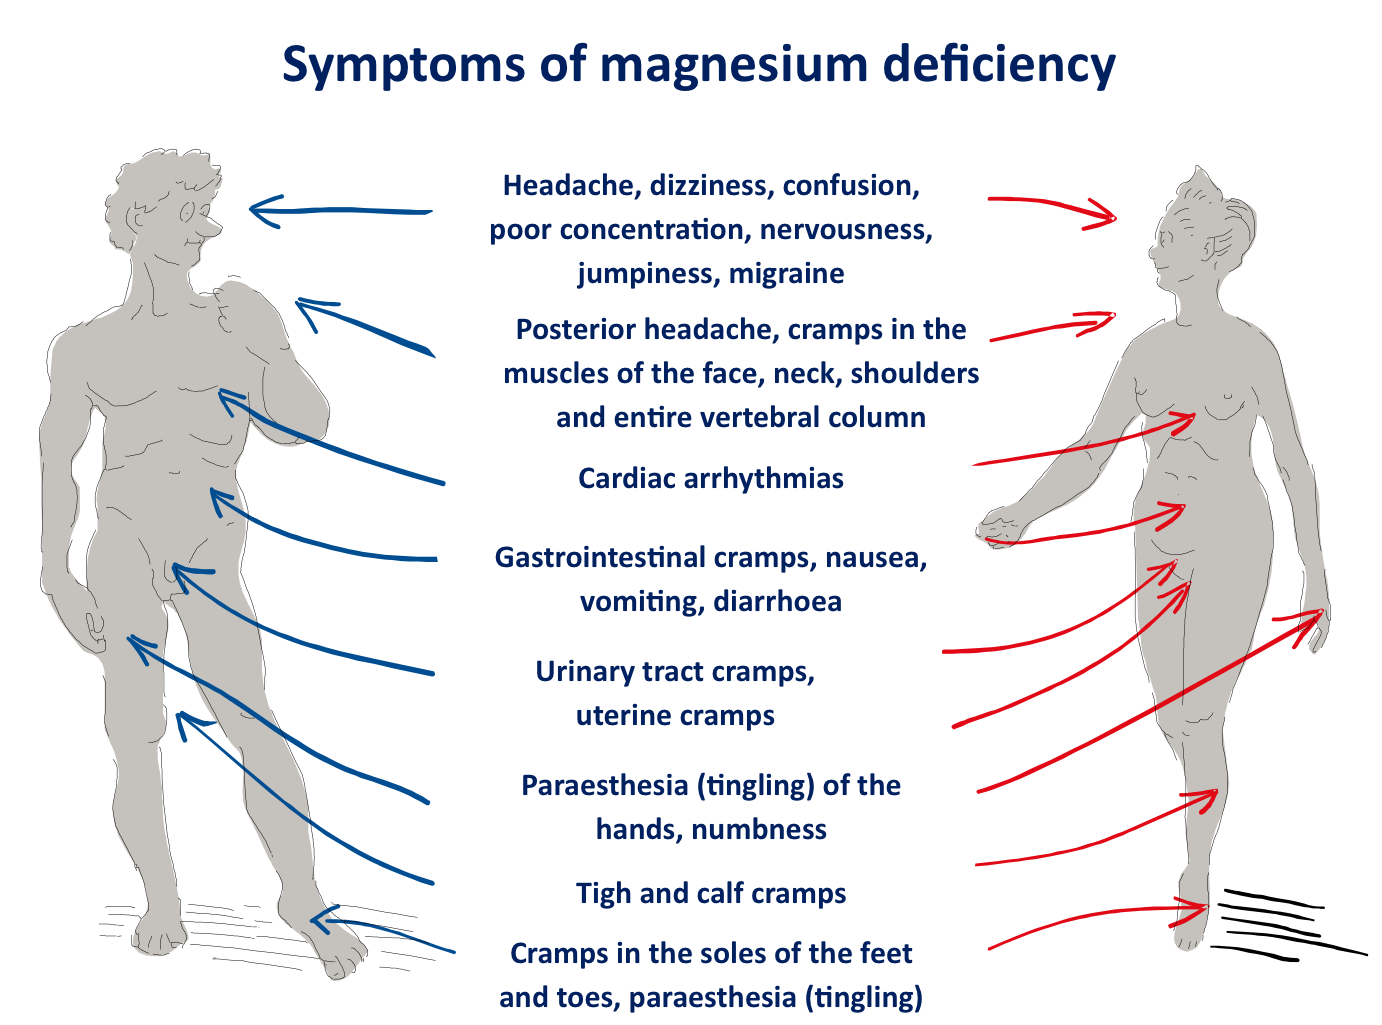 أسباب و أعراض نقص المغنزيوم أو المغنيسيوم في الدم عند الأطفال و الرضع